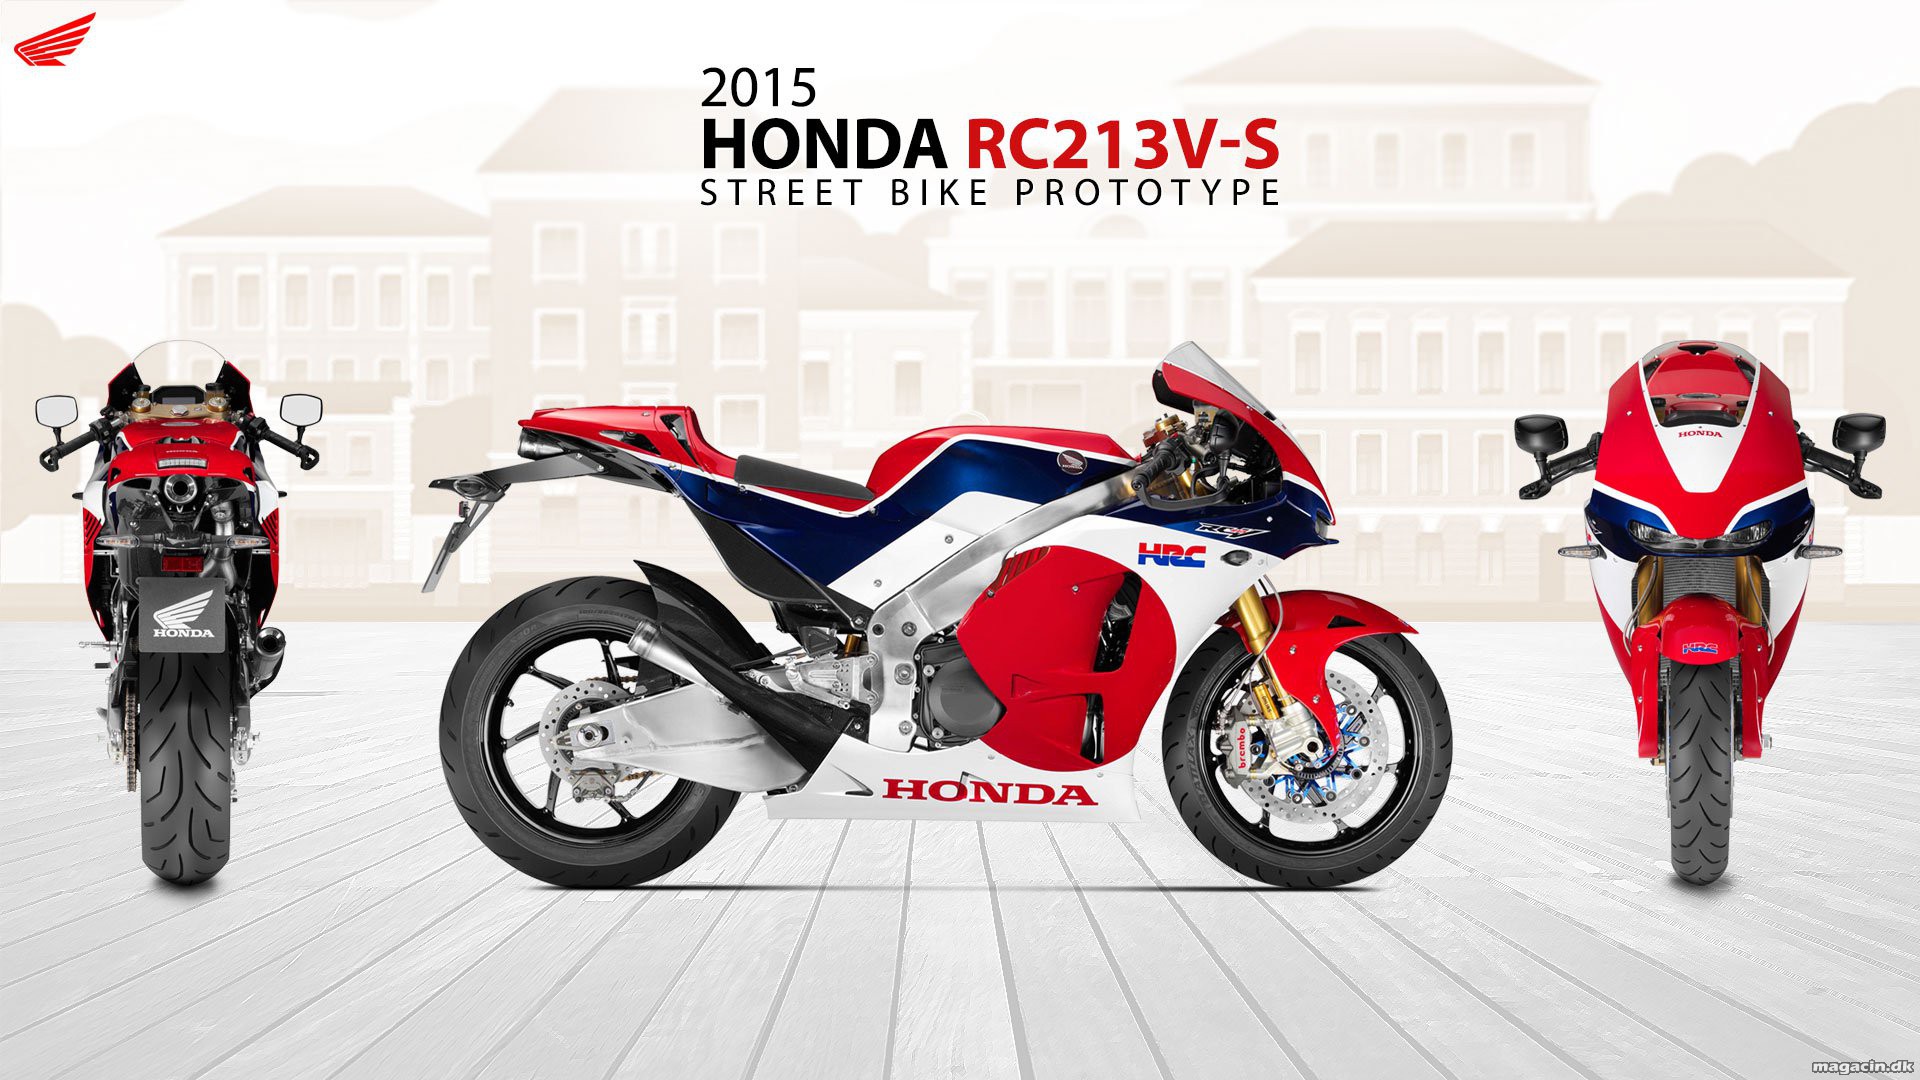 Honda RC213V-S starter nu i produktion